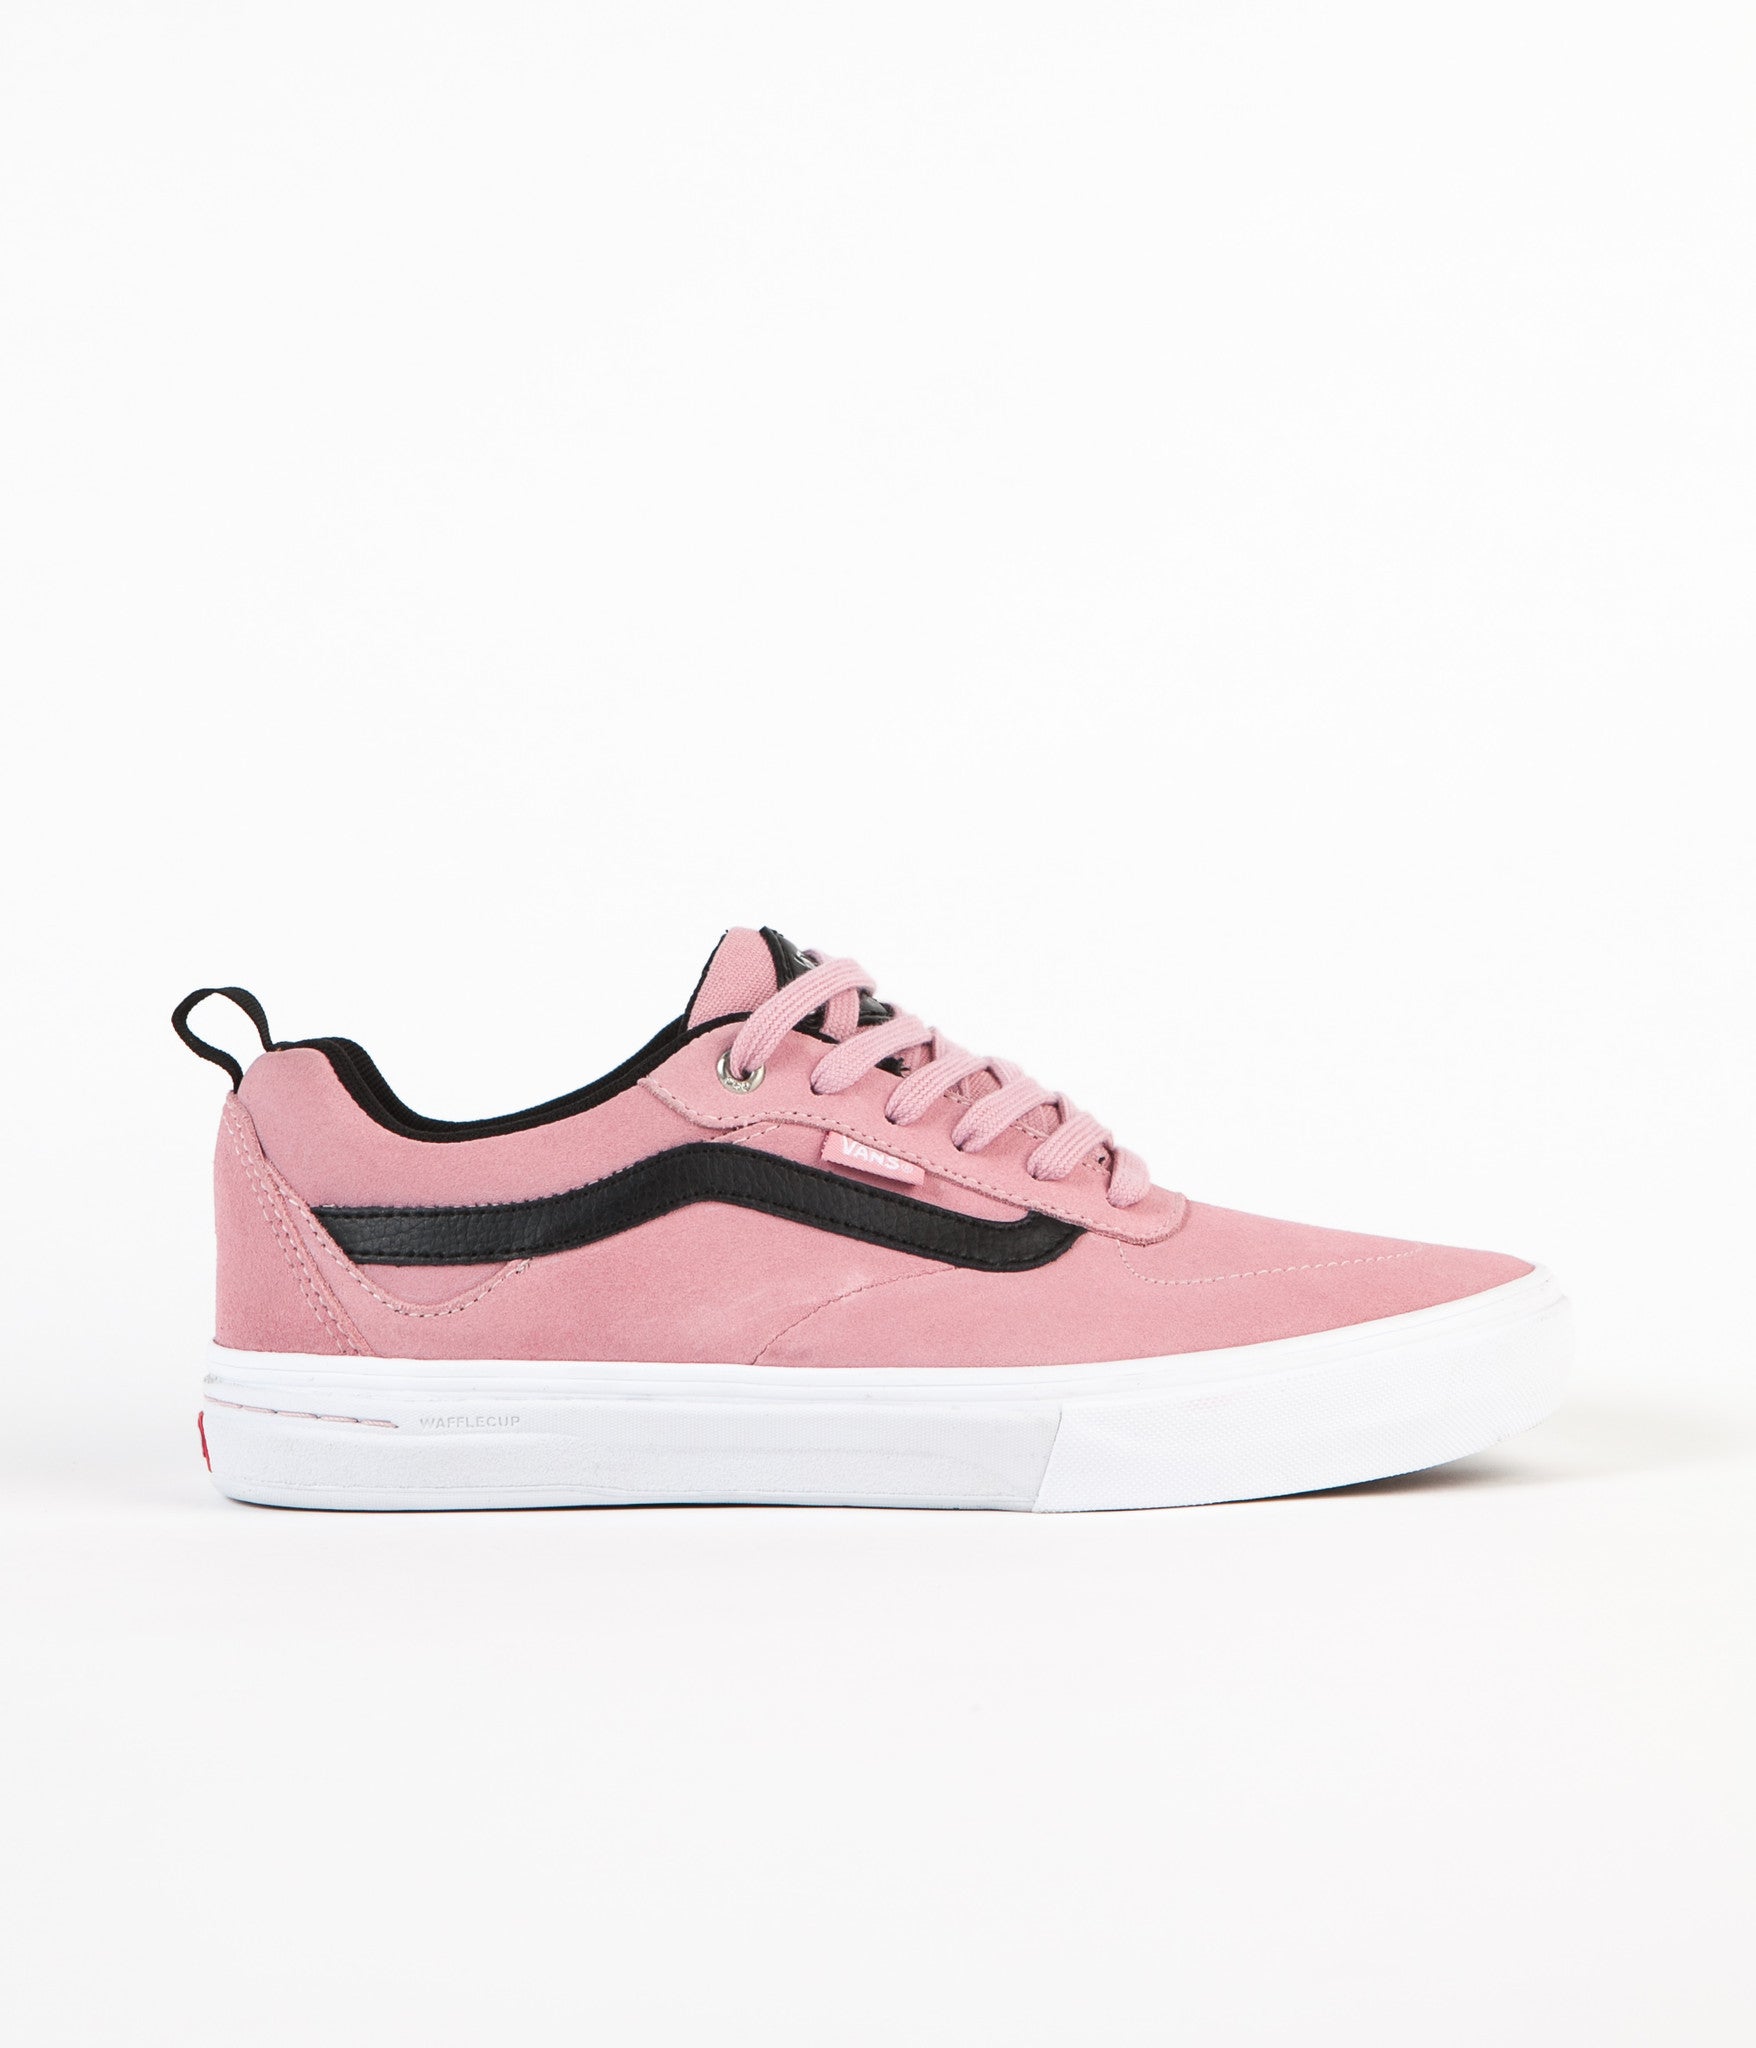 vans walker pro pink skate shoes